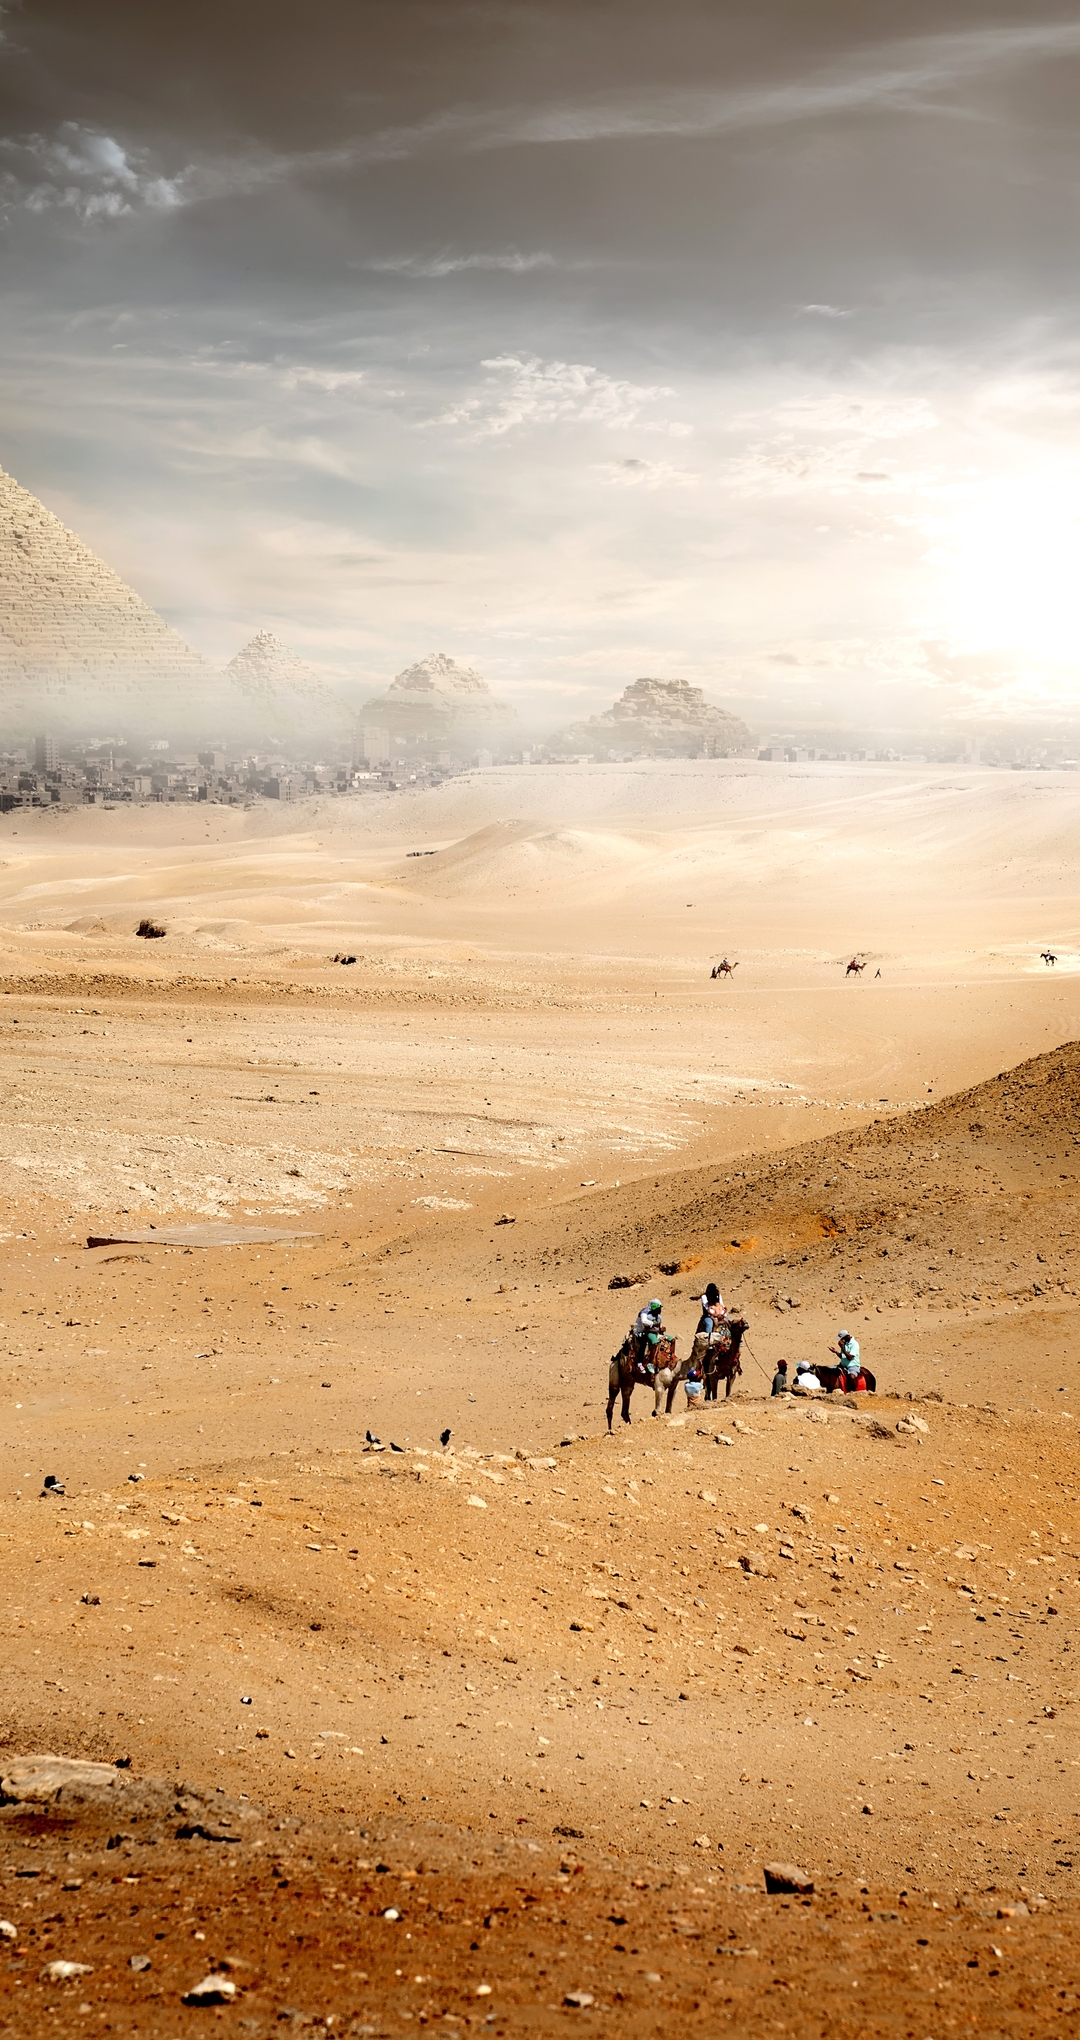 Картинка: Пустыня, Desert, лошади, верюлюды, пески, небо, город, пирамиды, туман, солнце, облака, пейзаж, фантастика, люди